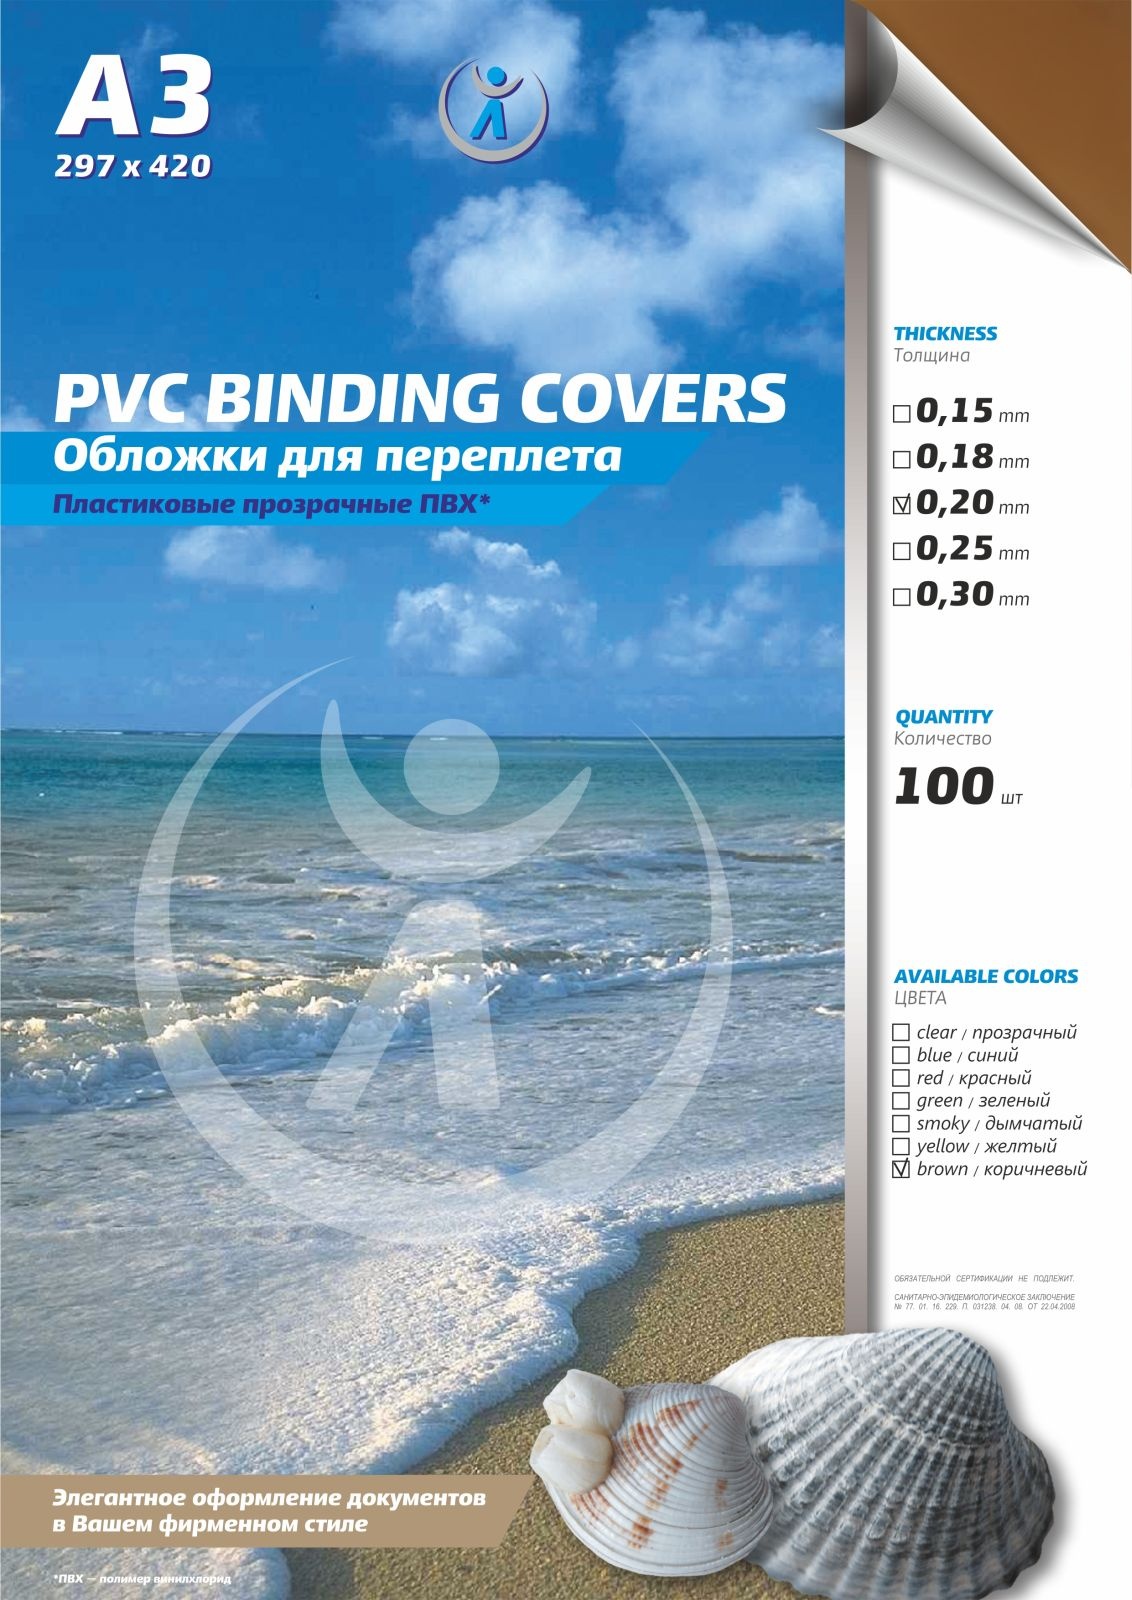 Обложки для переплета РеалИСТ 4408, ПВХ прозрачные, 0.20 мм, А3, коричневые, 100 штук